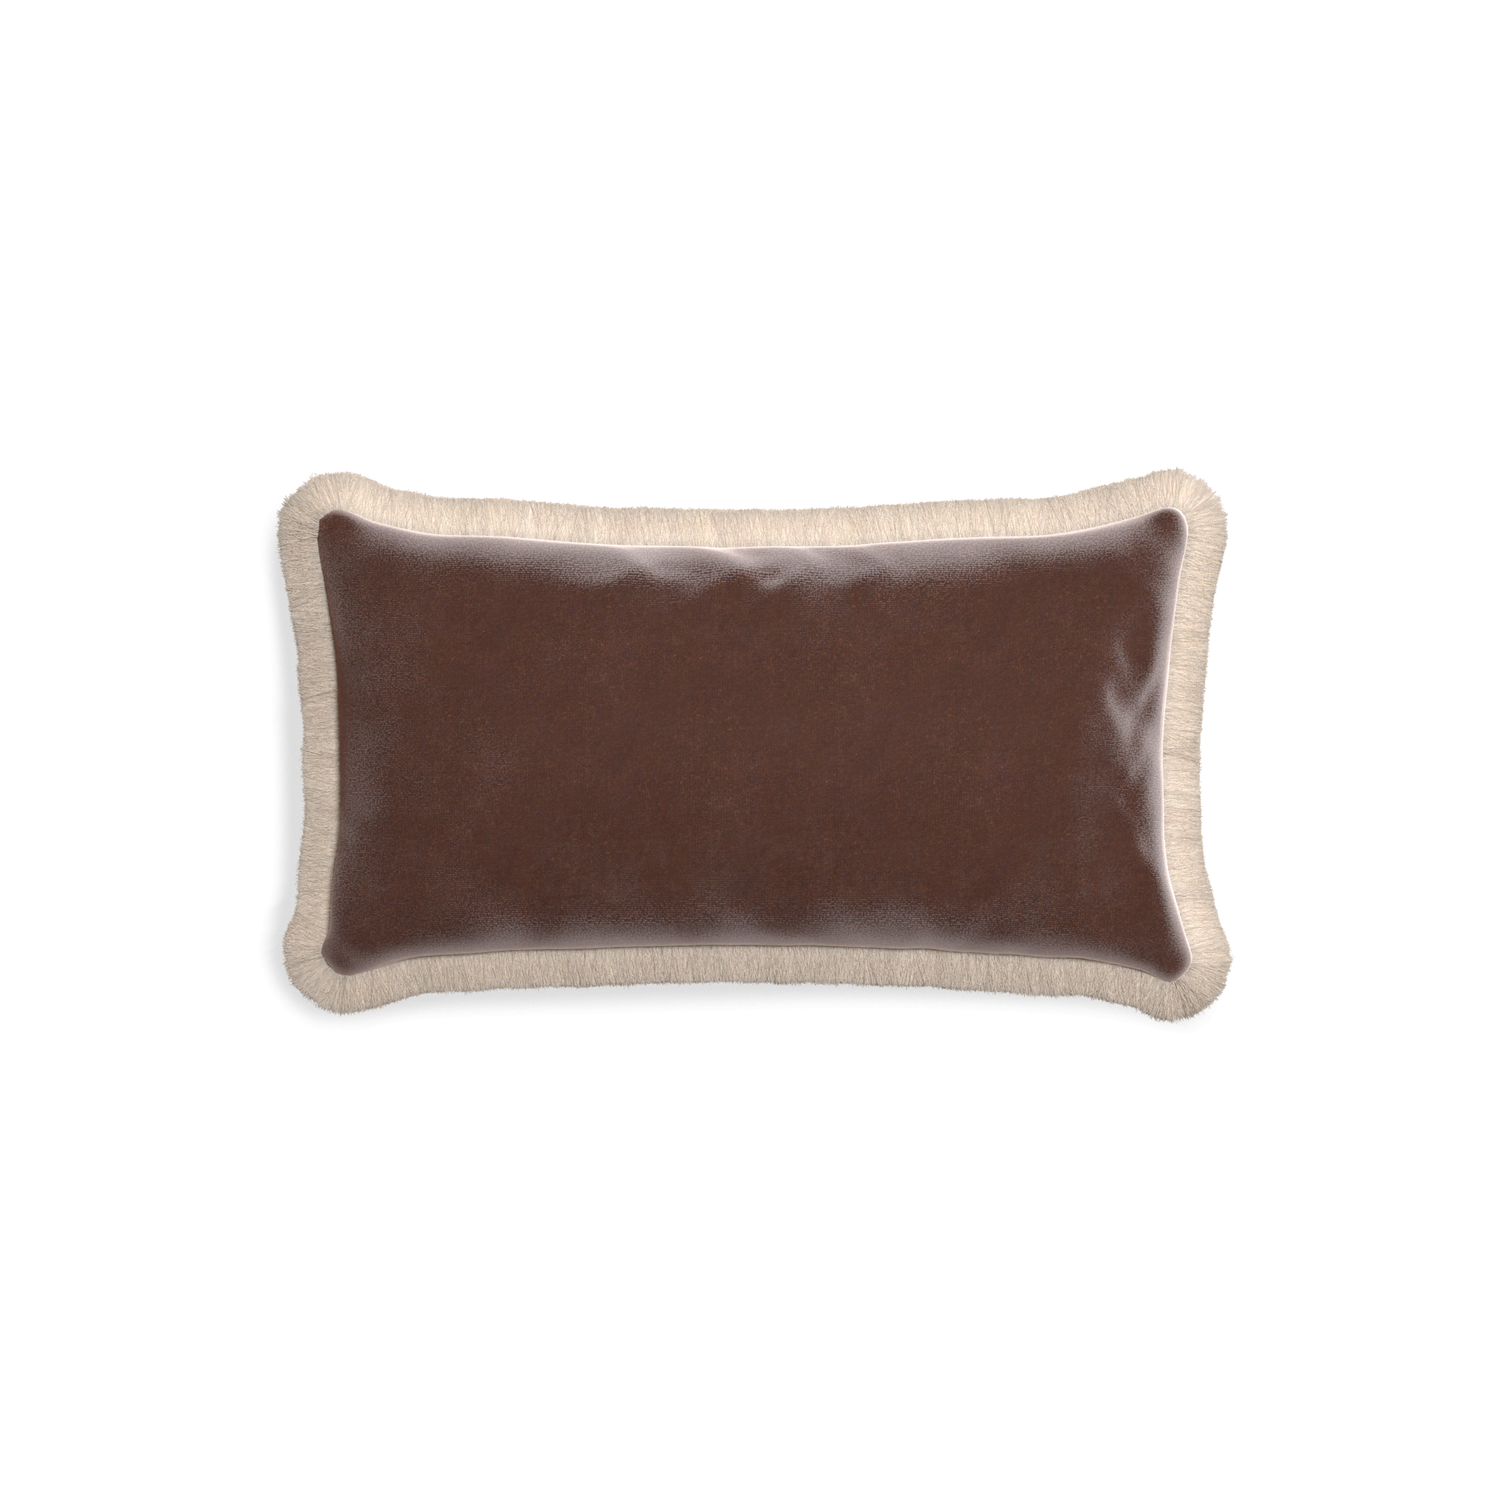 rectangle brown velvet pillow with cream fringe